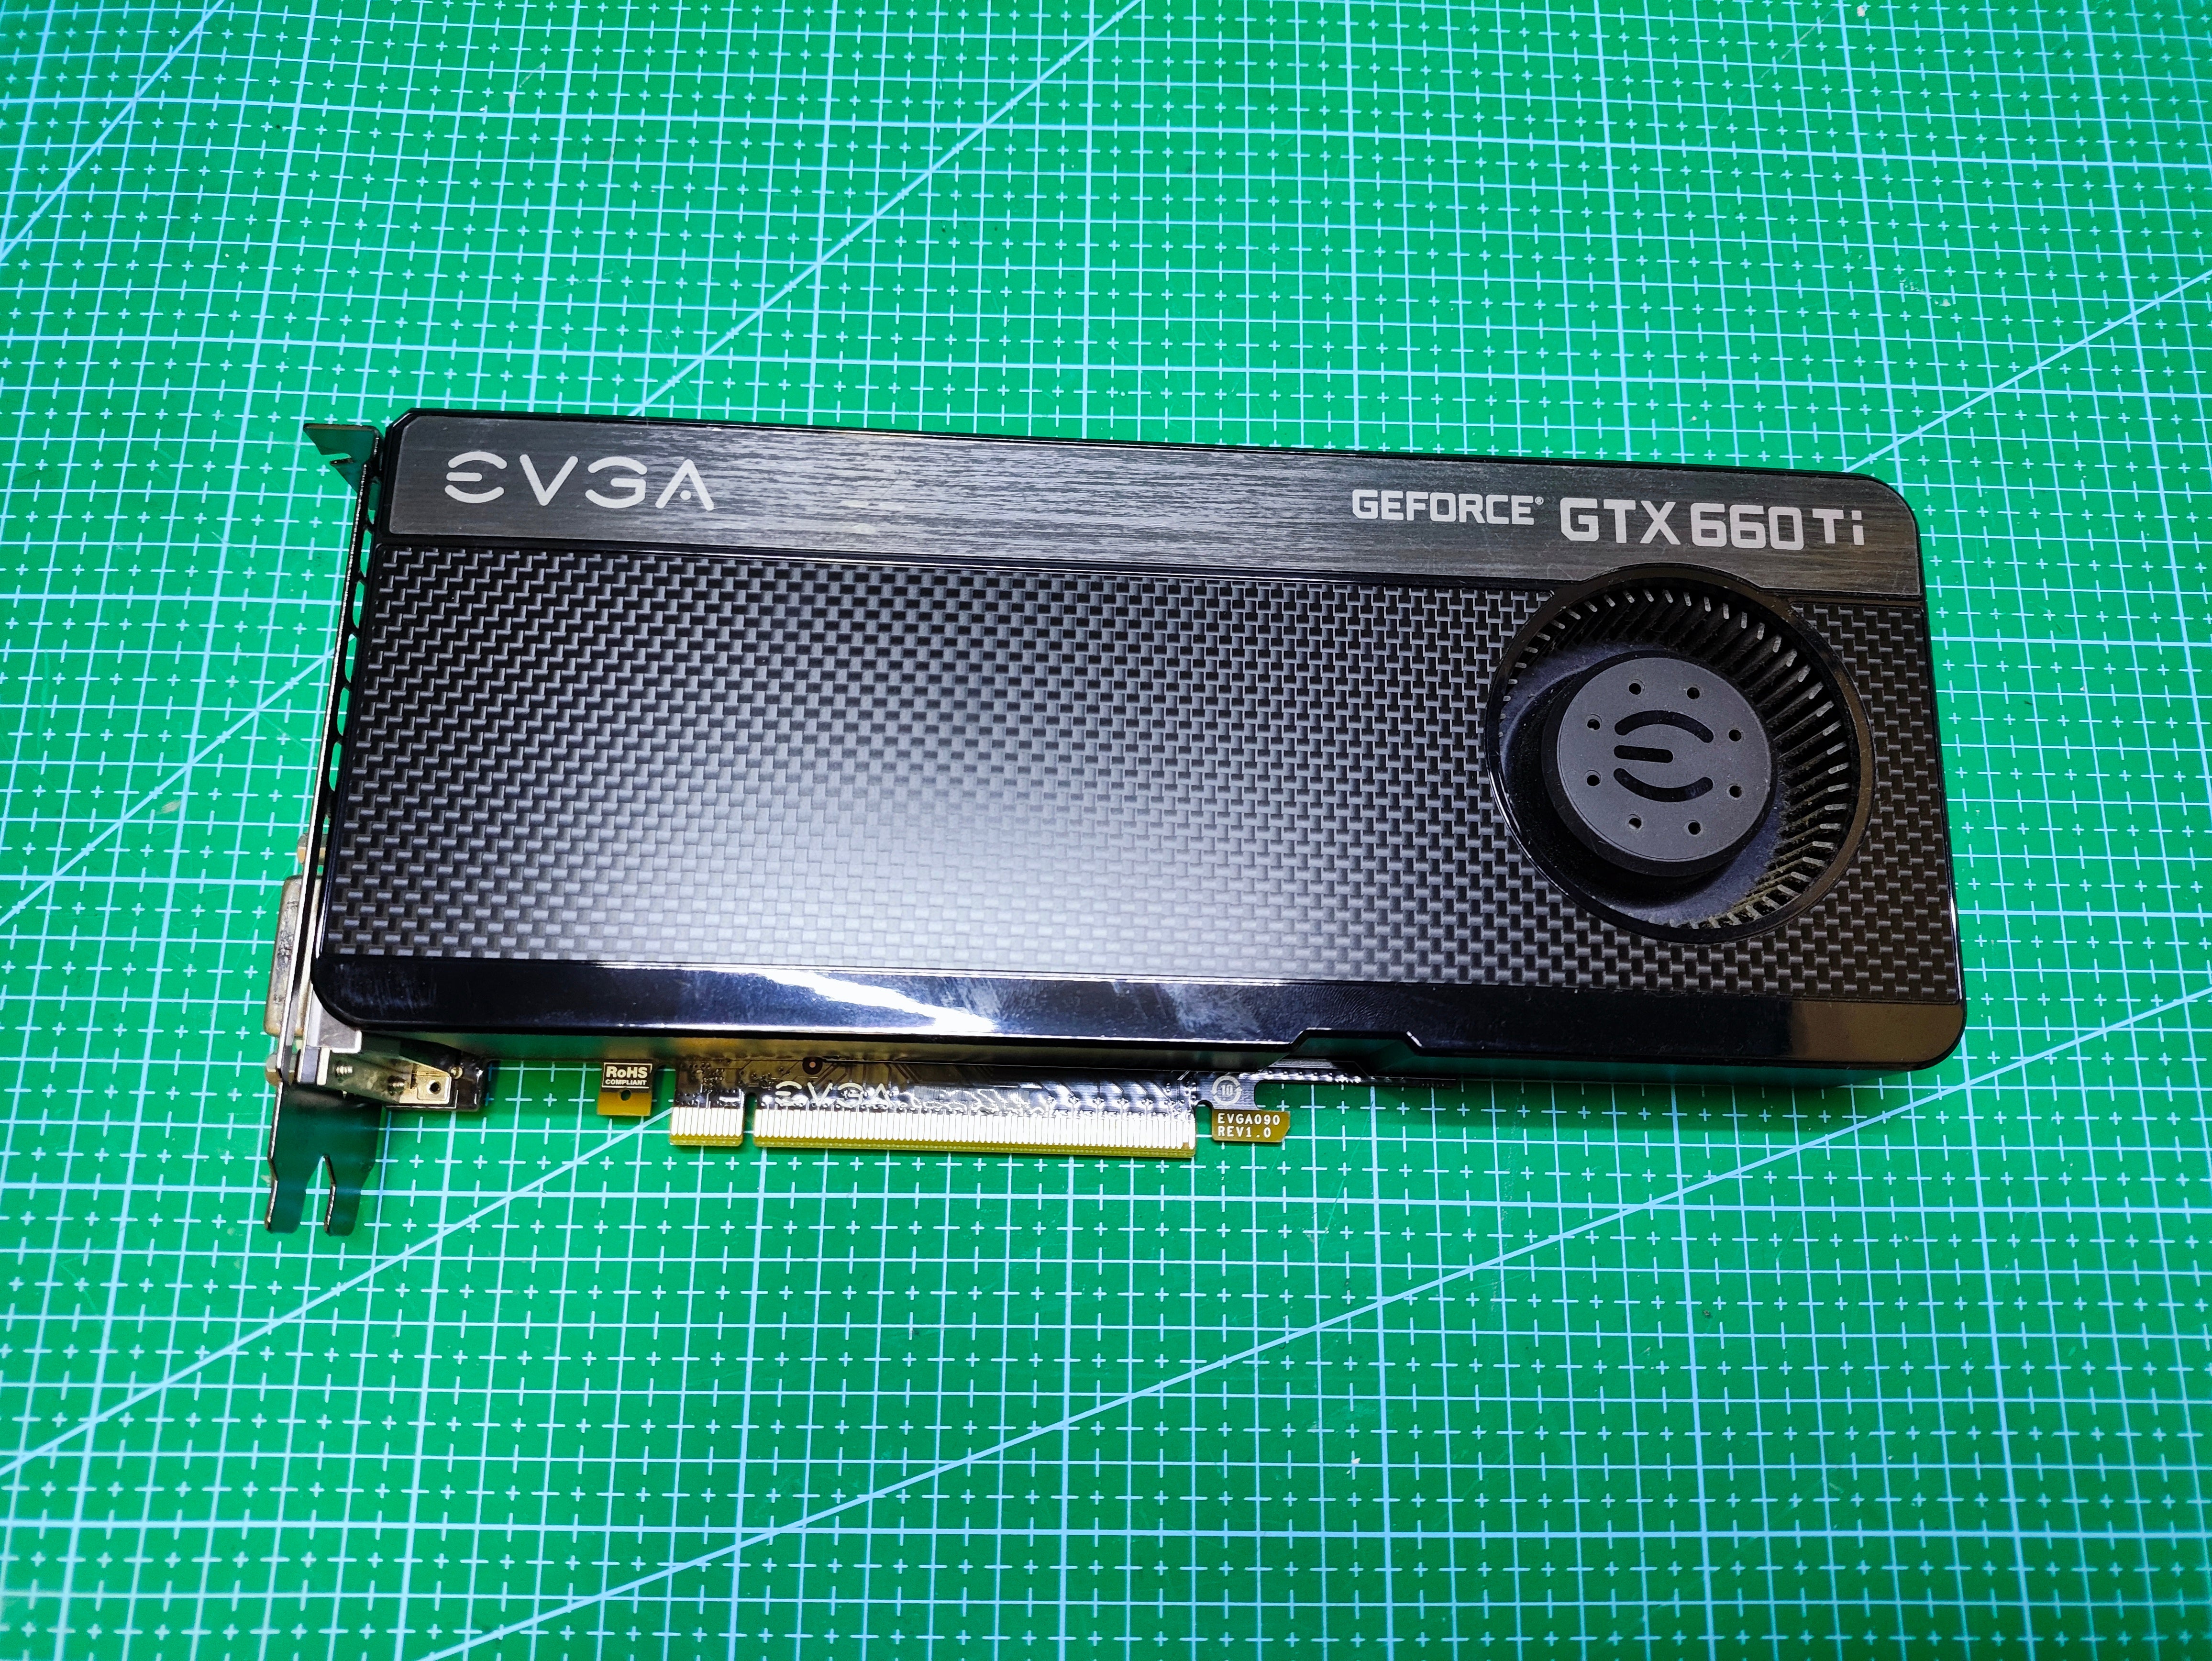 EVGA GTX 660Ti GPU